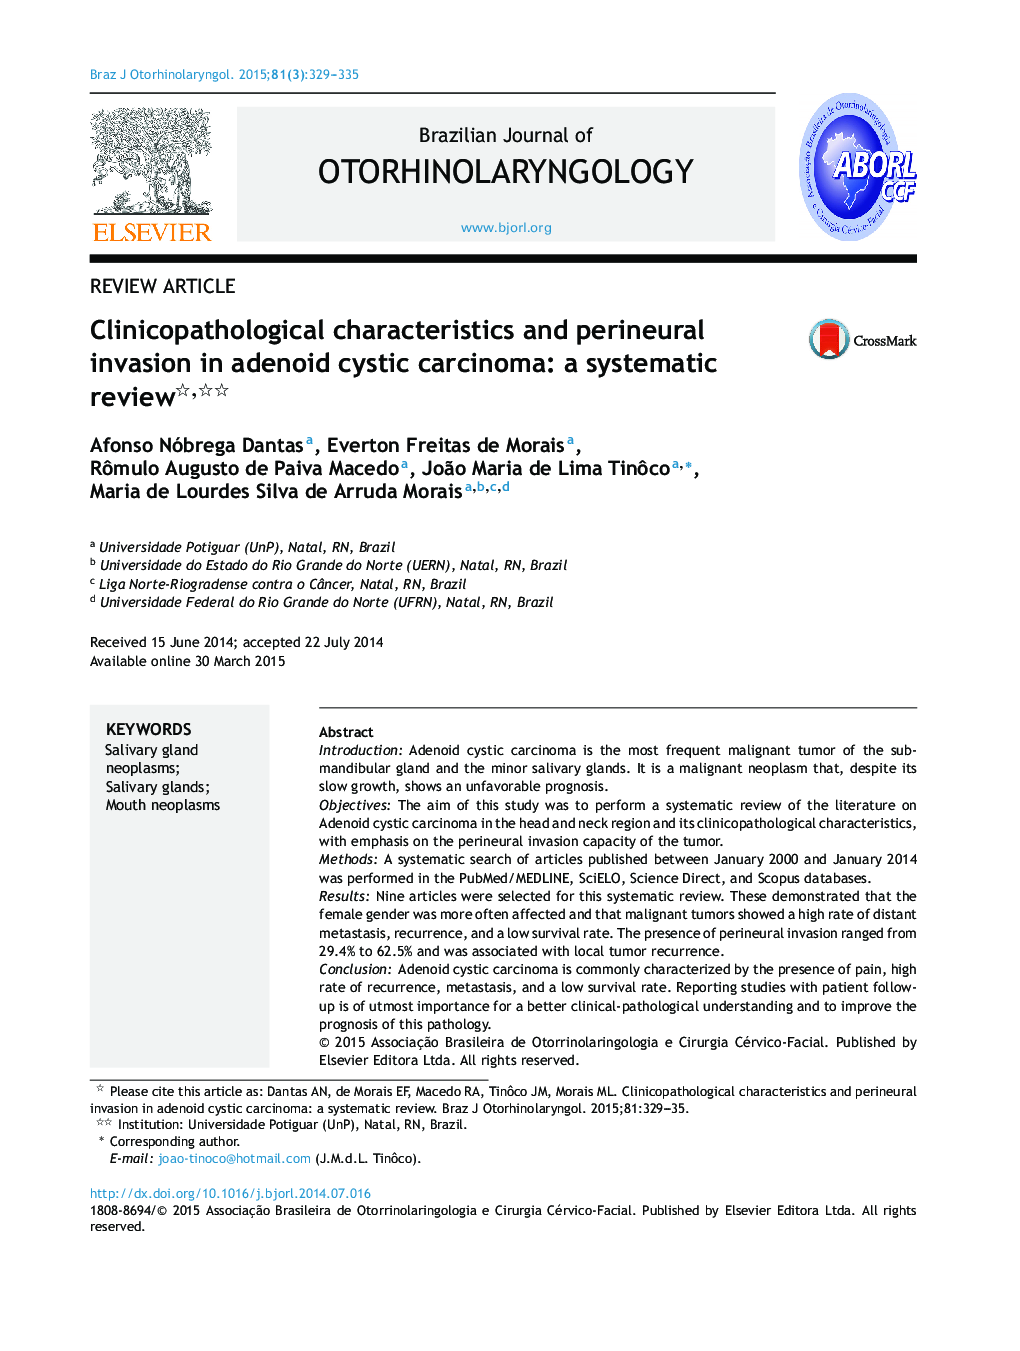 ویژگی های کلینیکوپاتولوژیک و ترویج پرینژال در کارسینوم آدنوئید کیستیک: یک بررسی سیستماتیک یک ؟؟ 